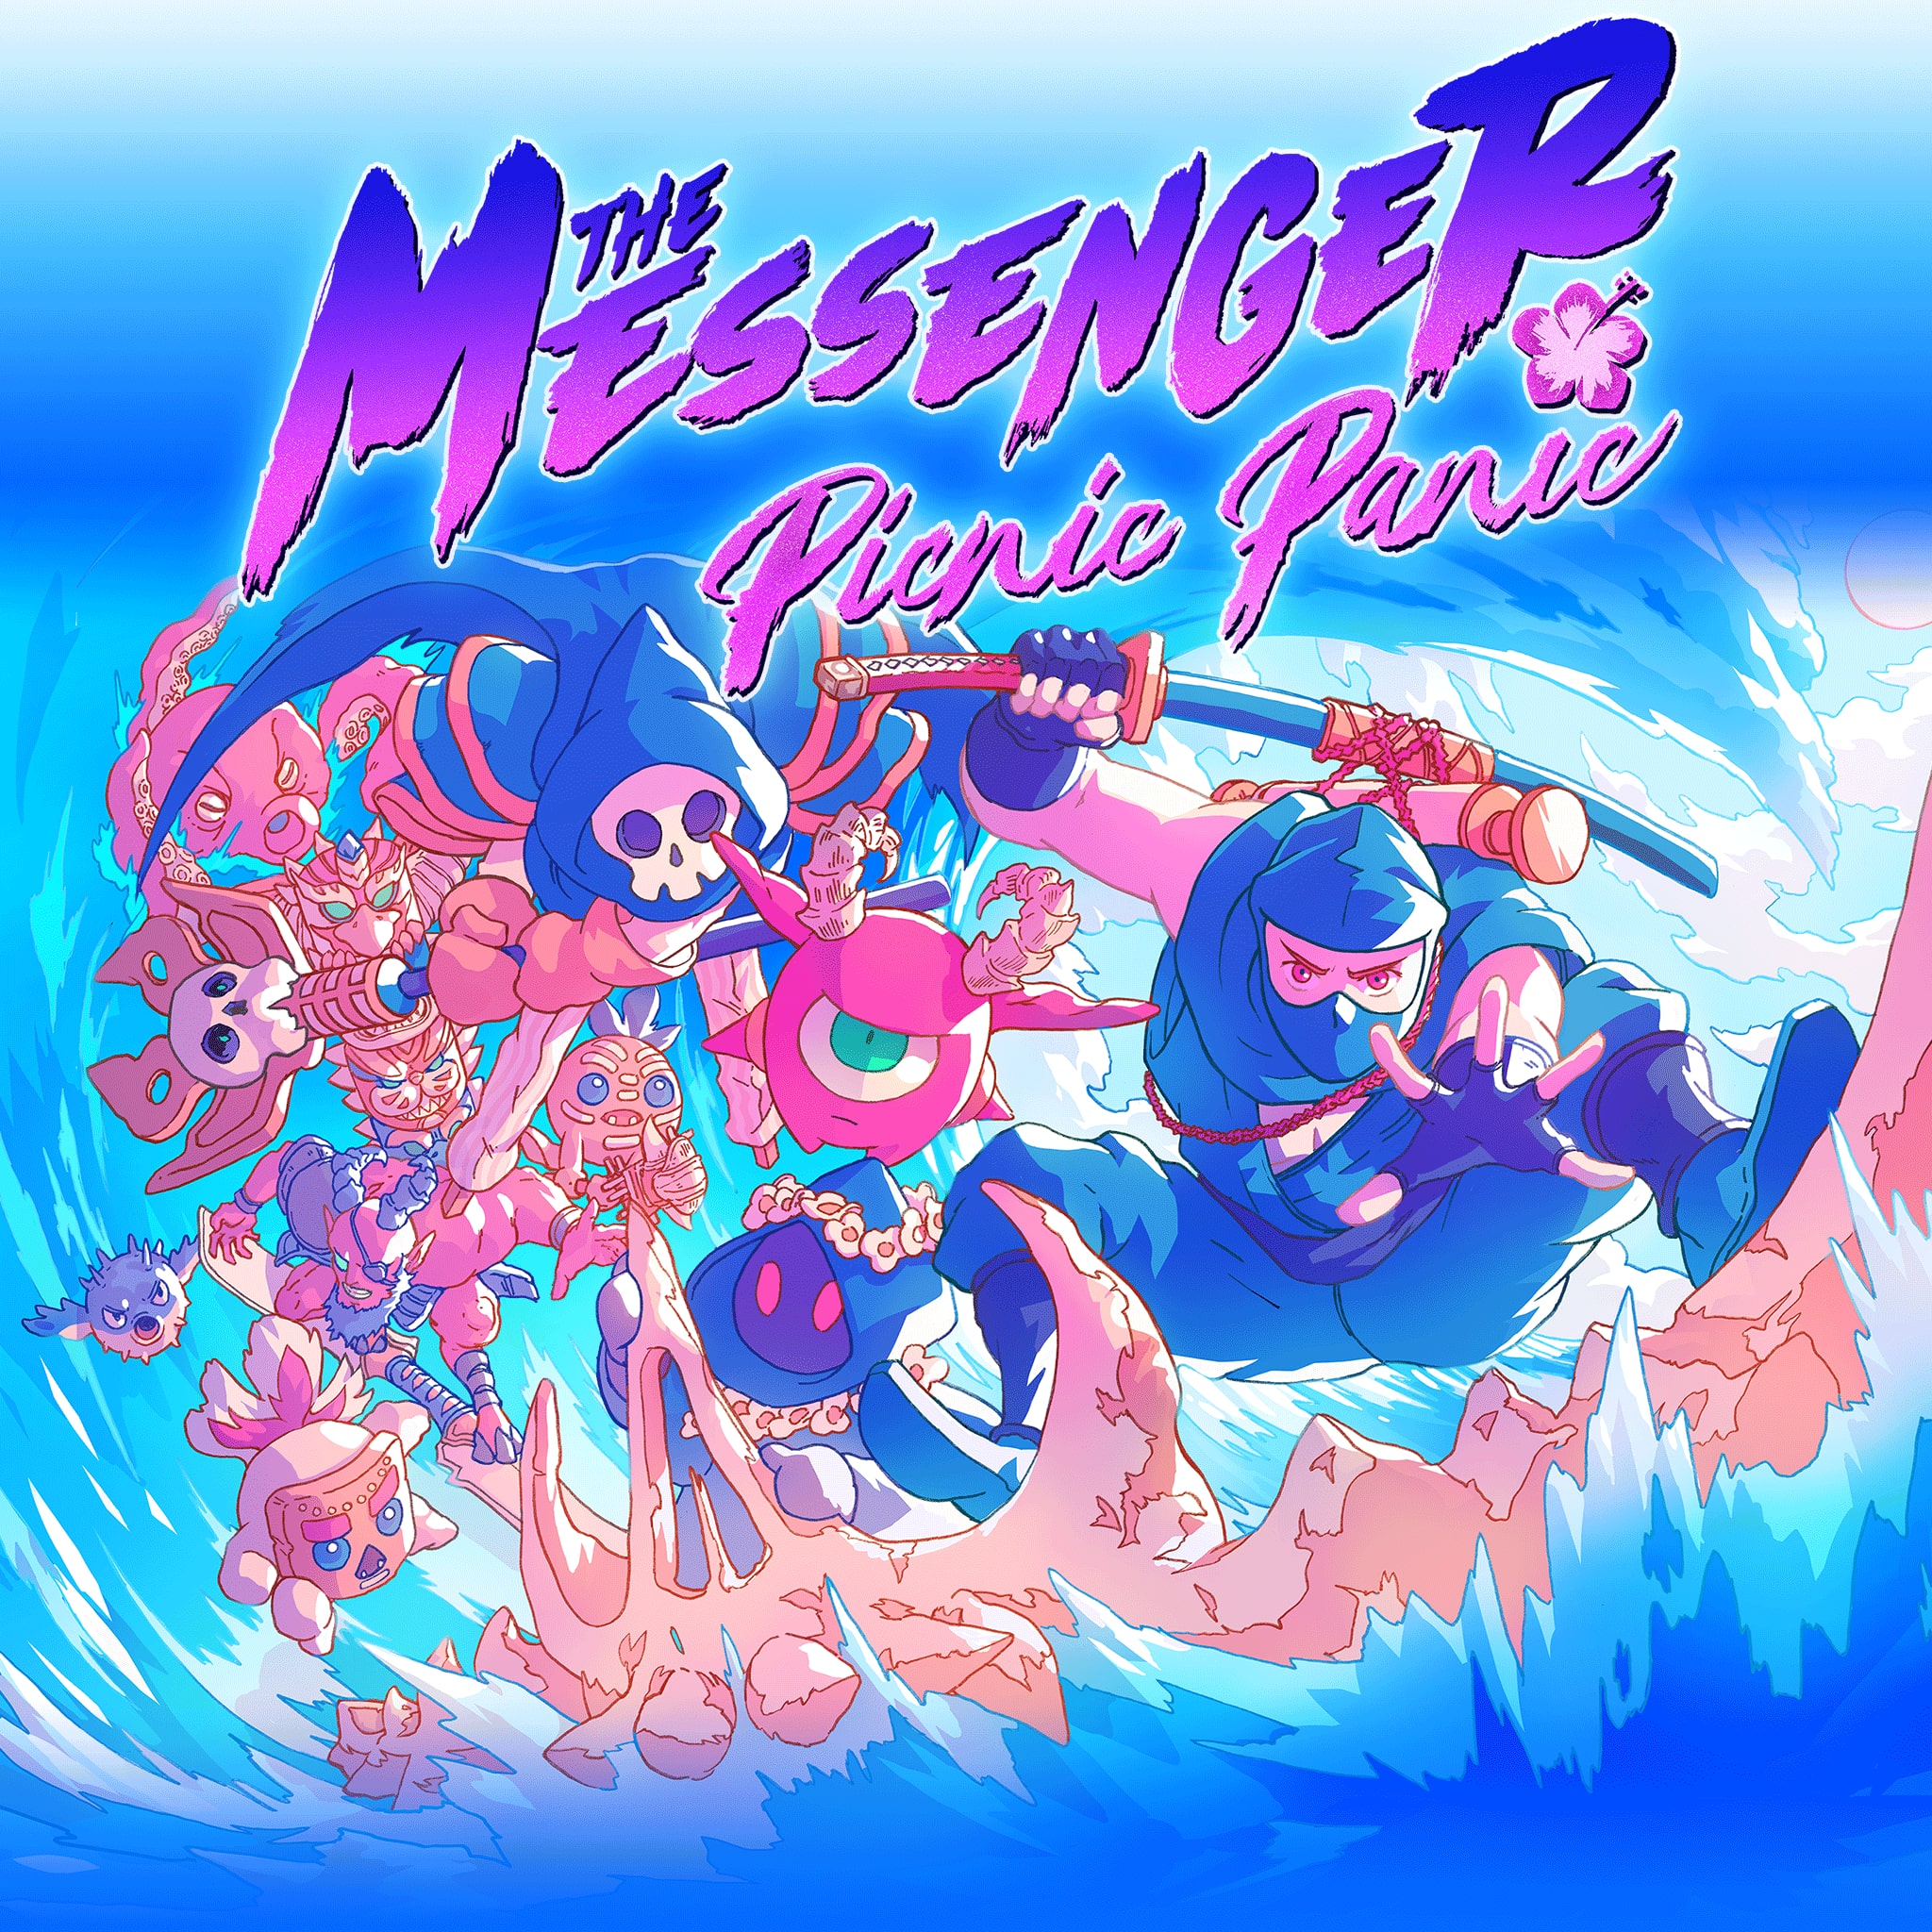 the messenger psn